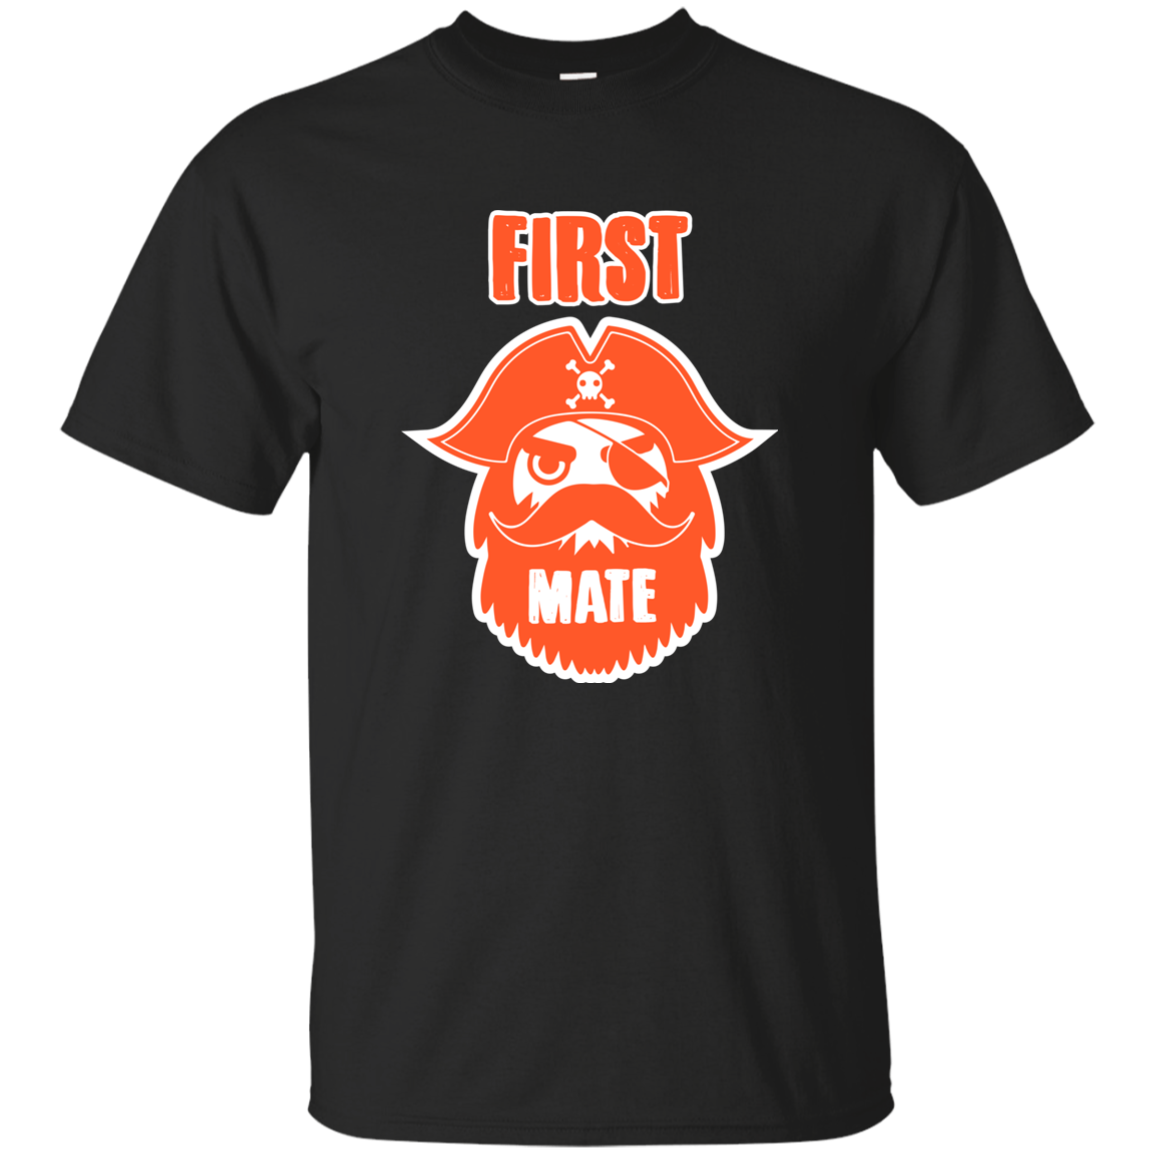 First Mate